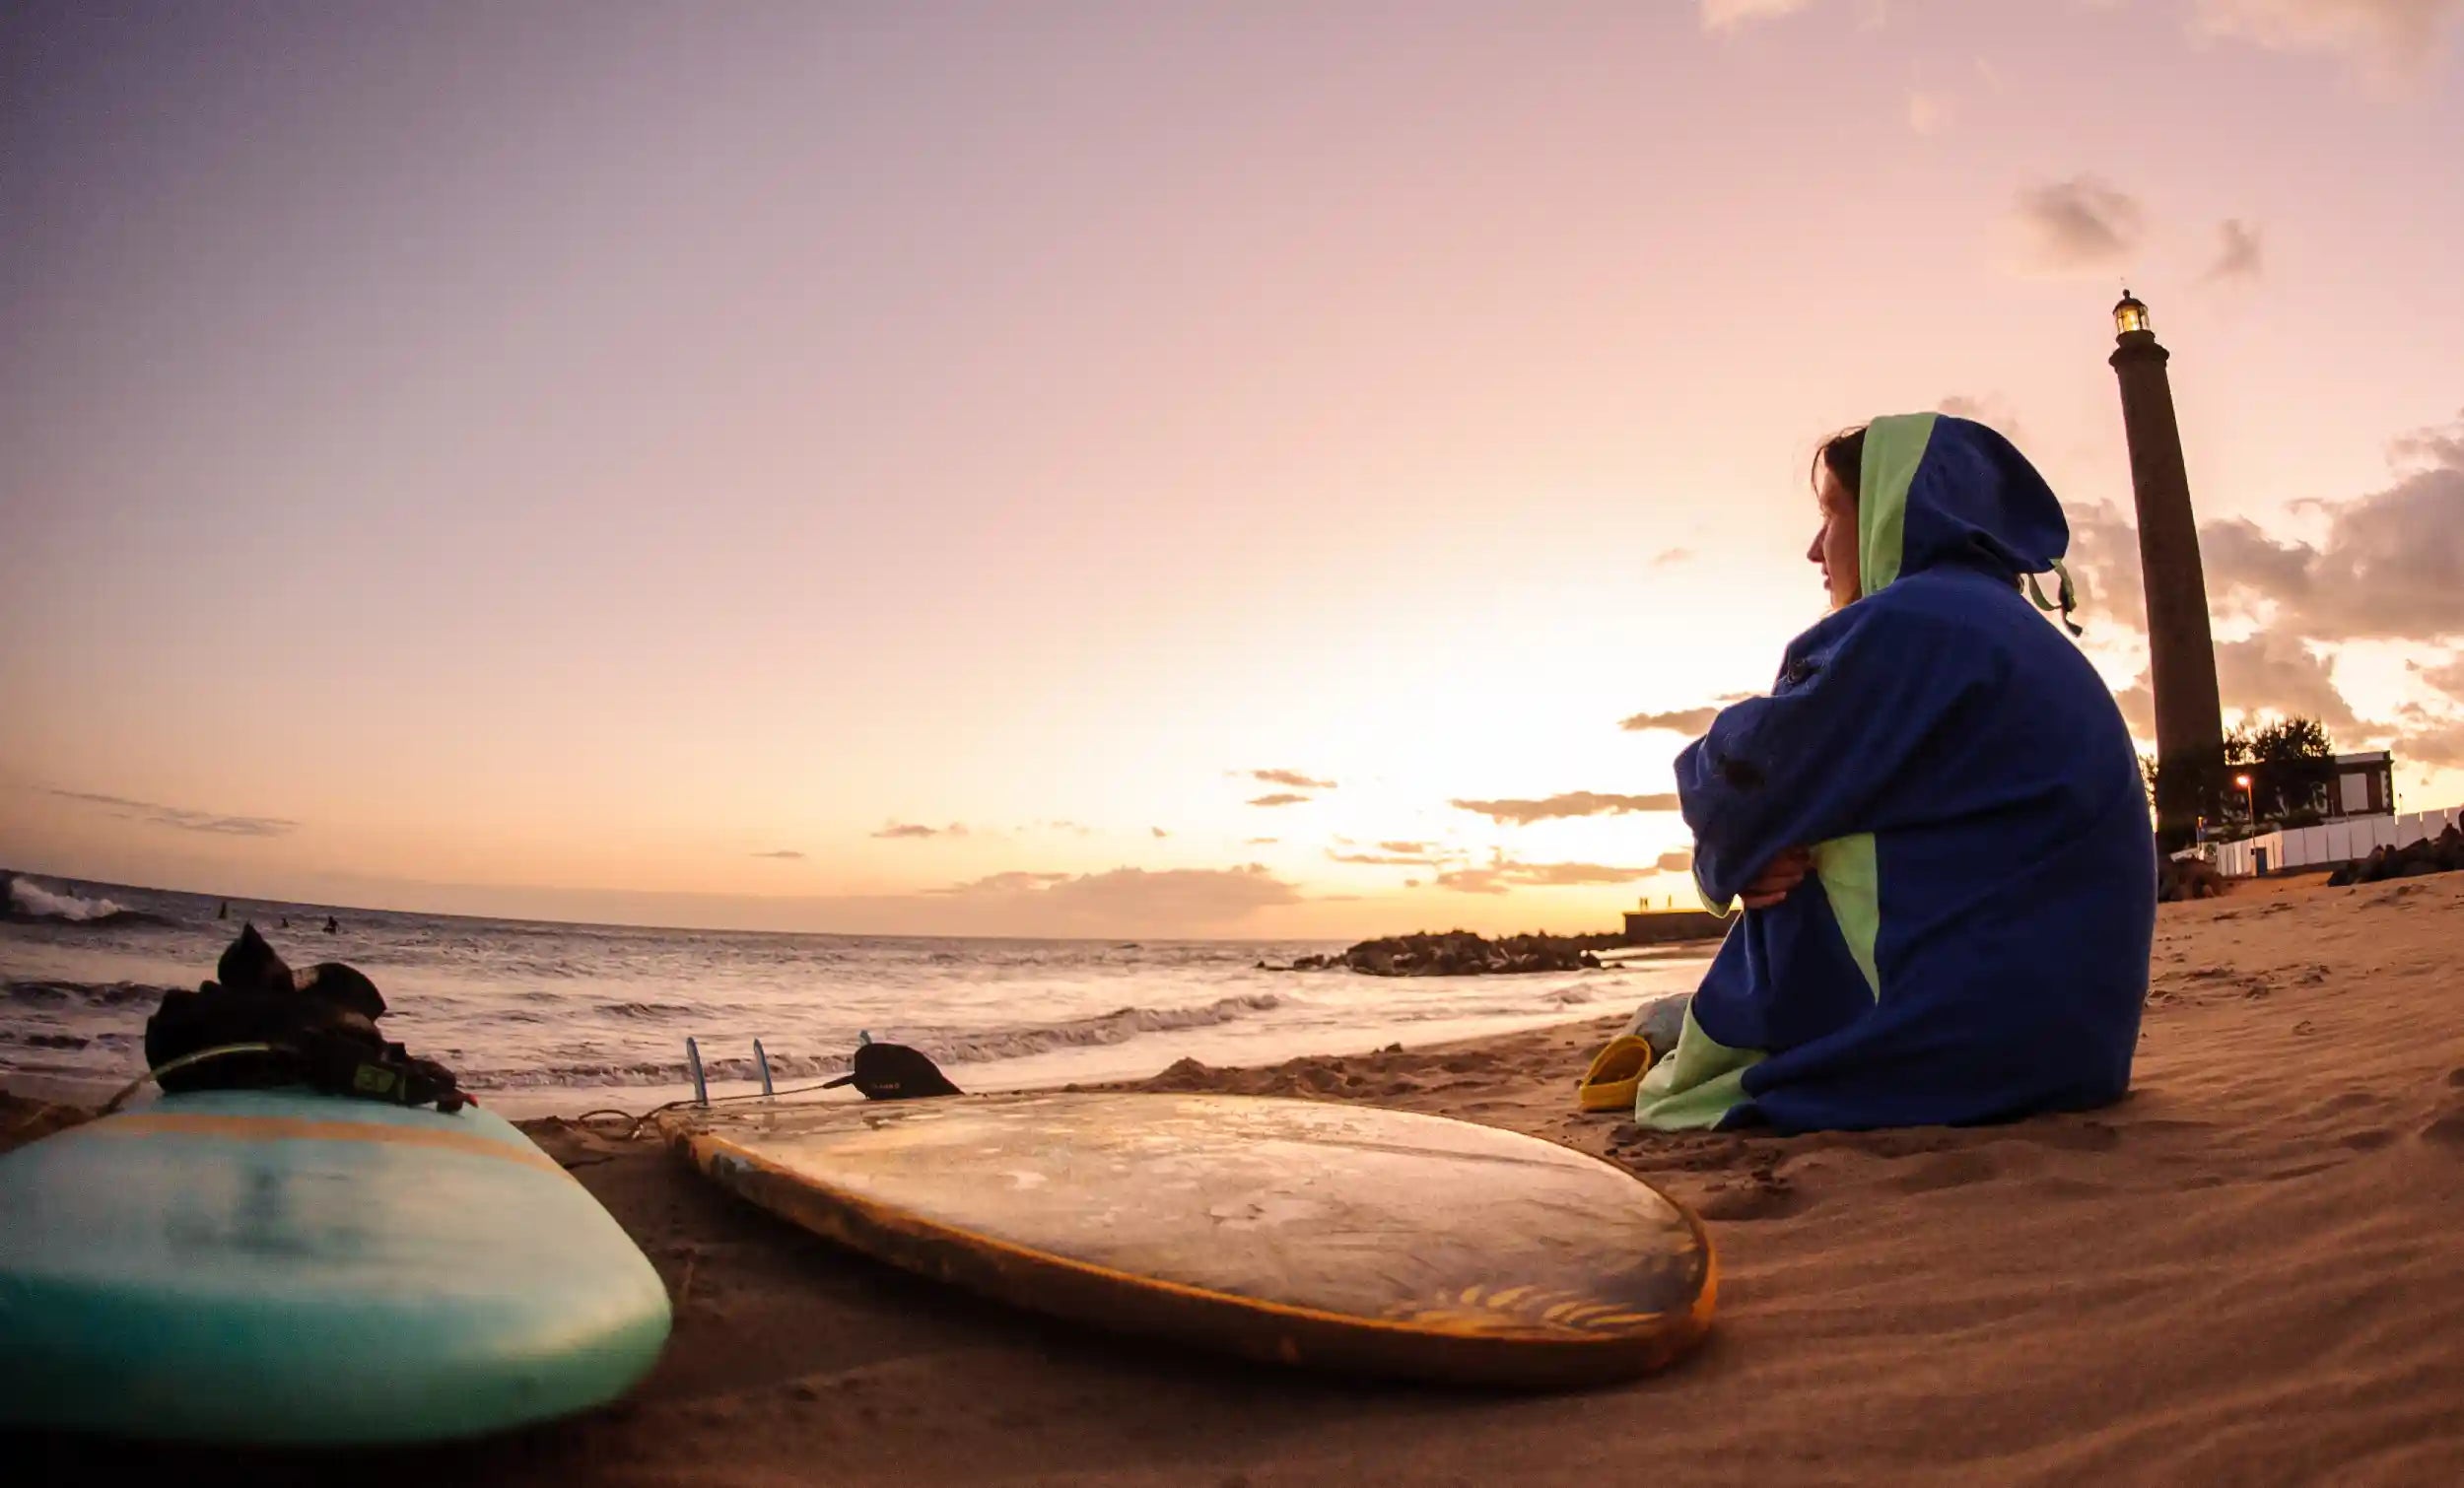 dívka sedí na pláži v ponchu surfboard, zapadající slunce, sunset